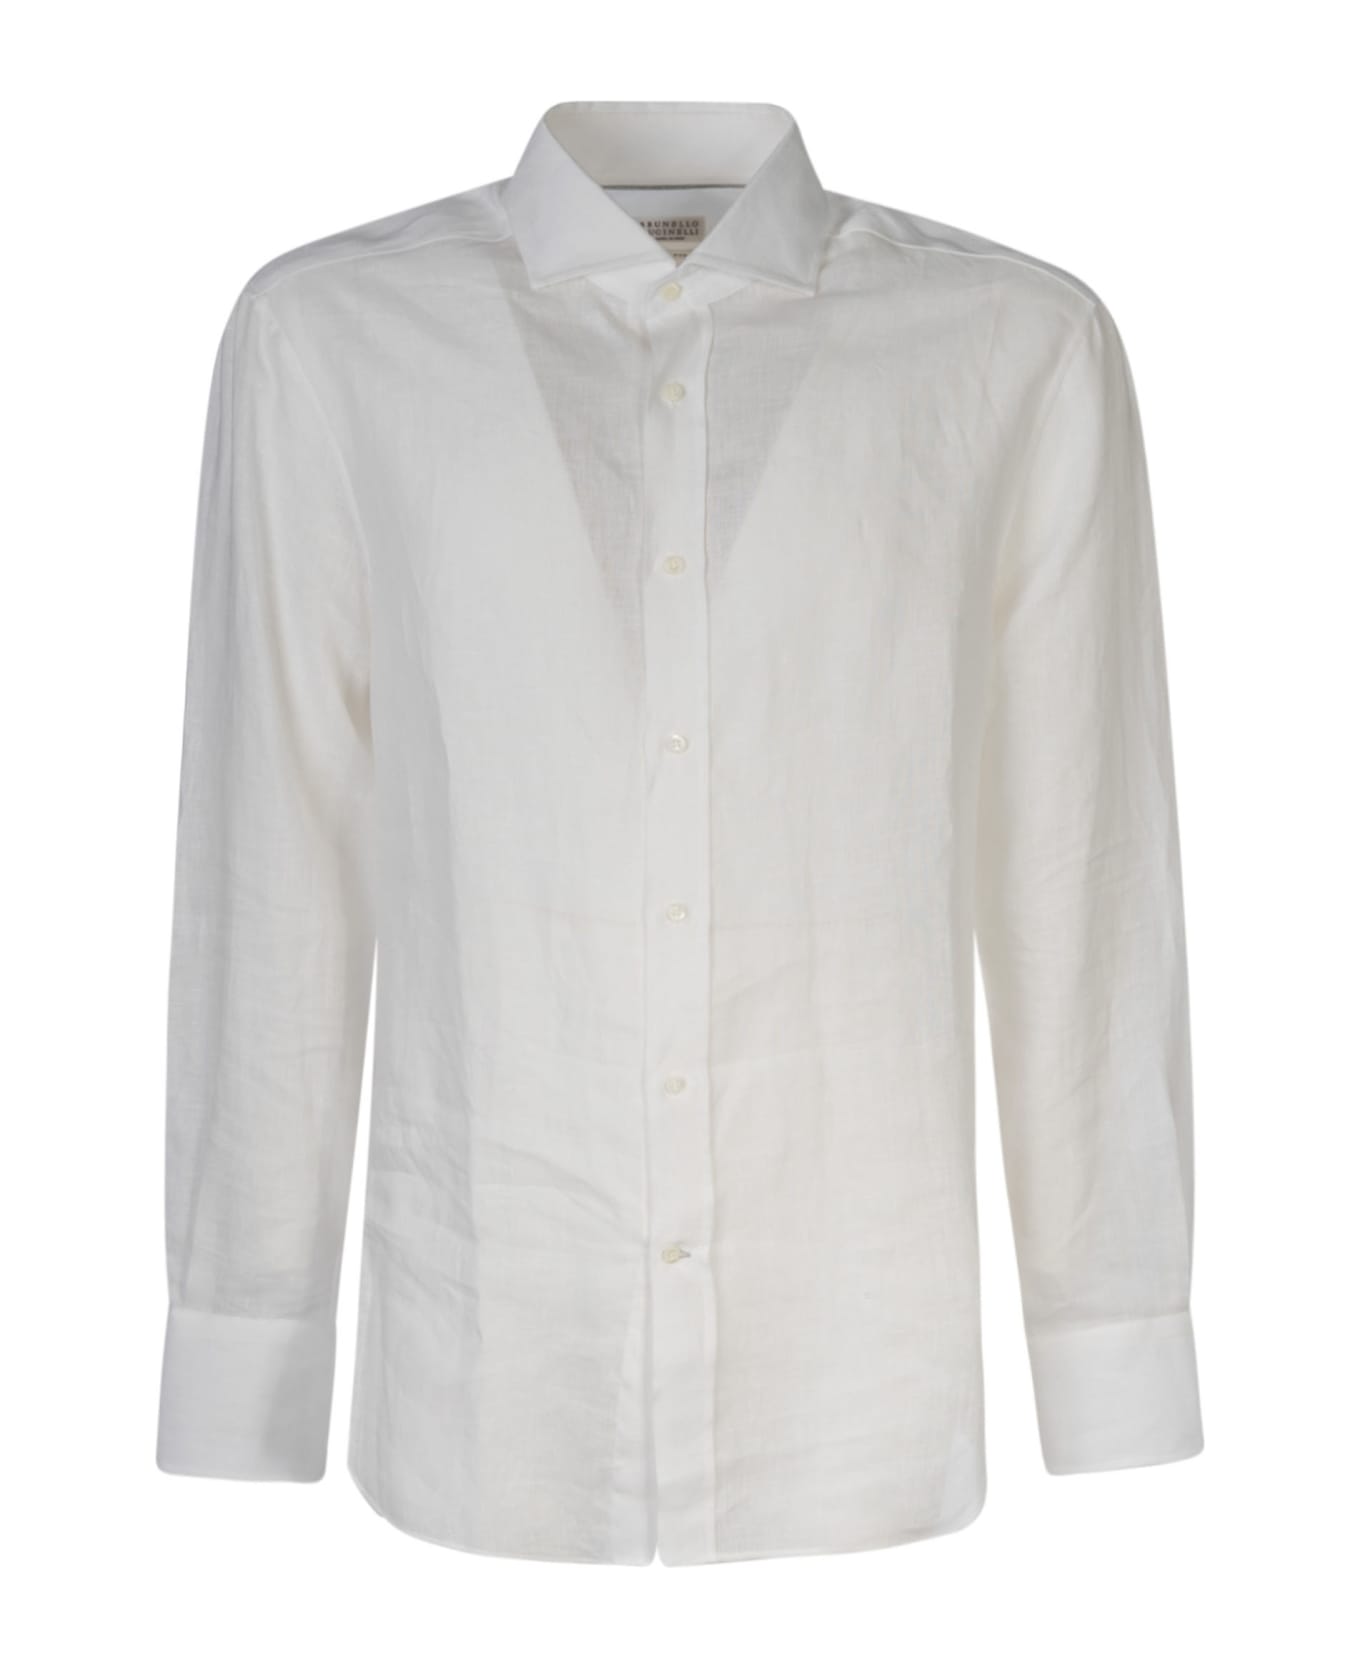 Brunello Cucinelli Long-sleeved Shirt - White